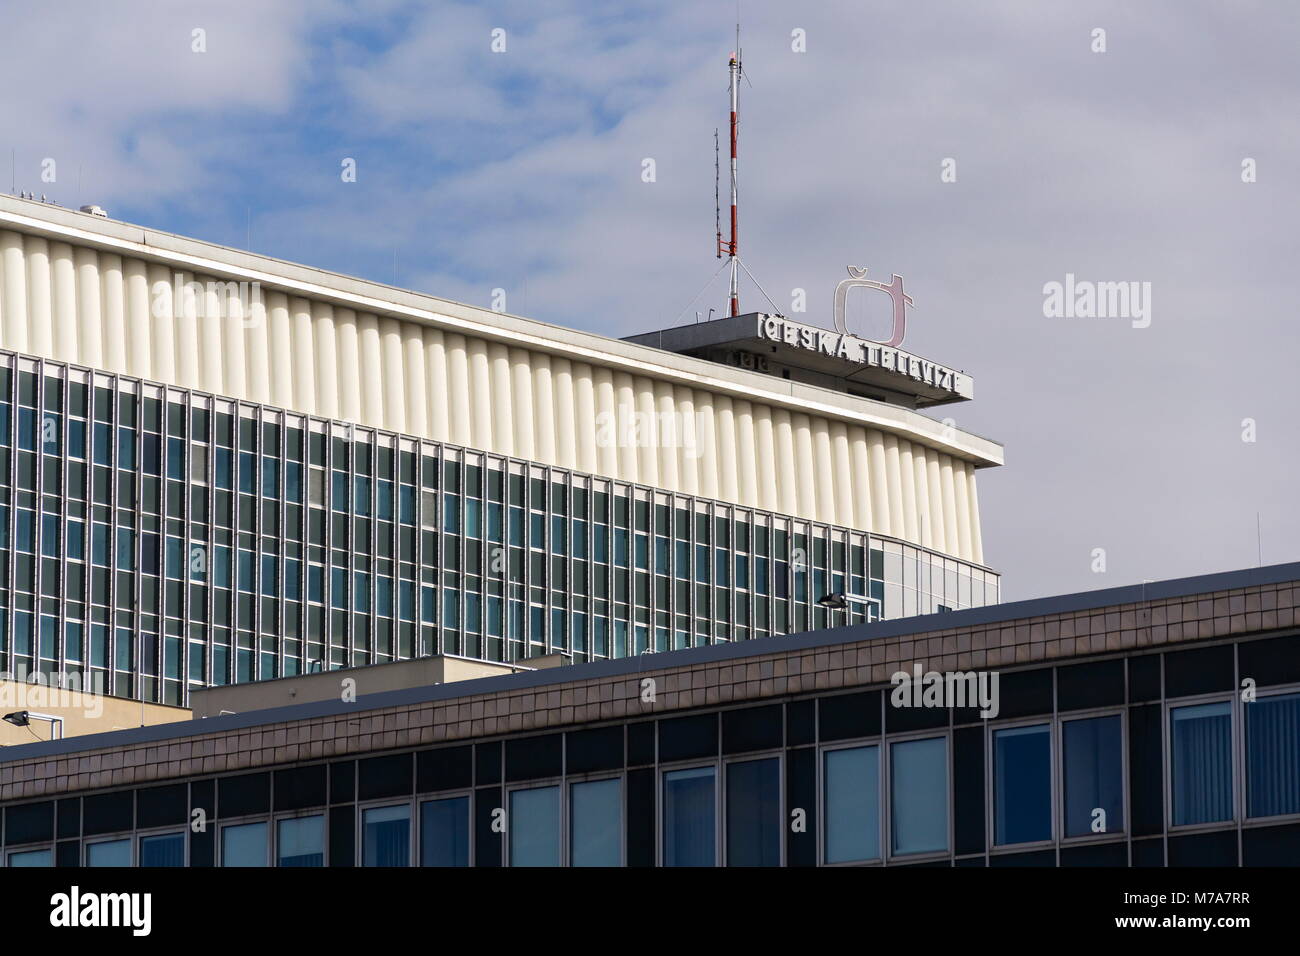 PRAGUE, RÉPUBLIQUE TCHÈQUE - 9 mars 2018 : Ceska televize télévision publique logo de l'entreprise sur le bâtiment de l'ONU le 9 mars 2018 Banque D'Images